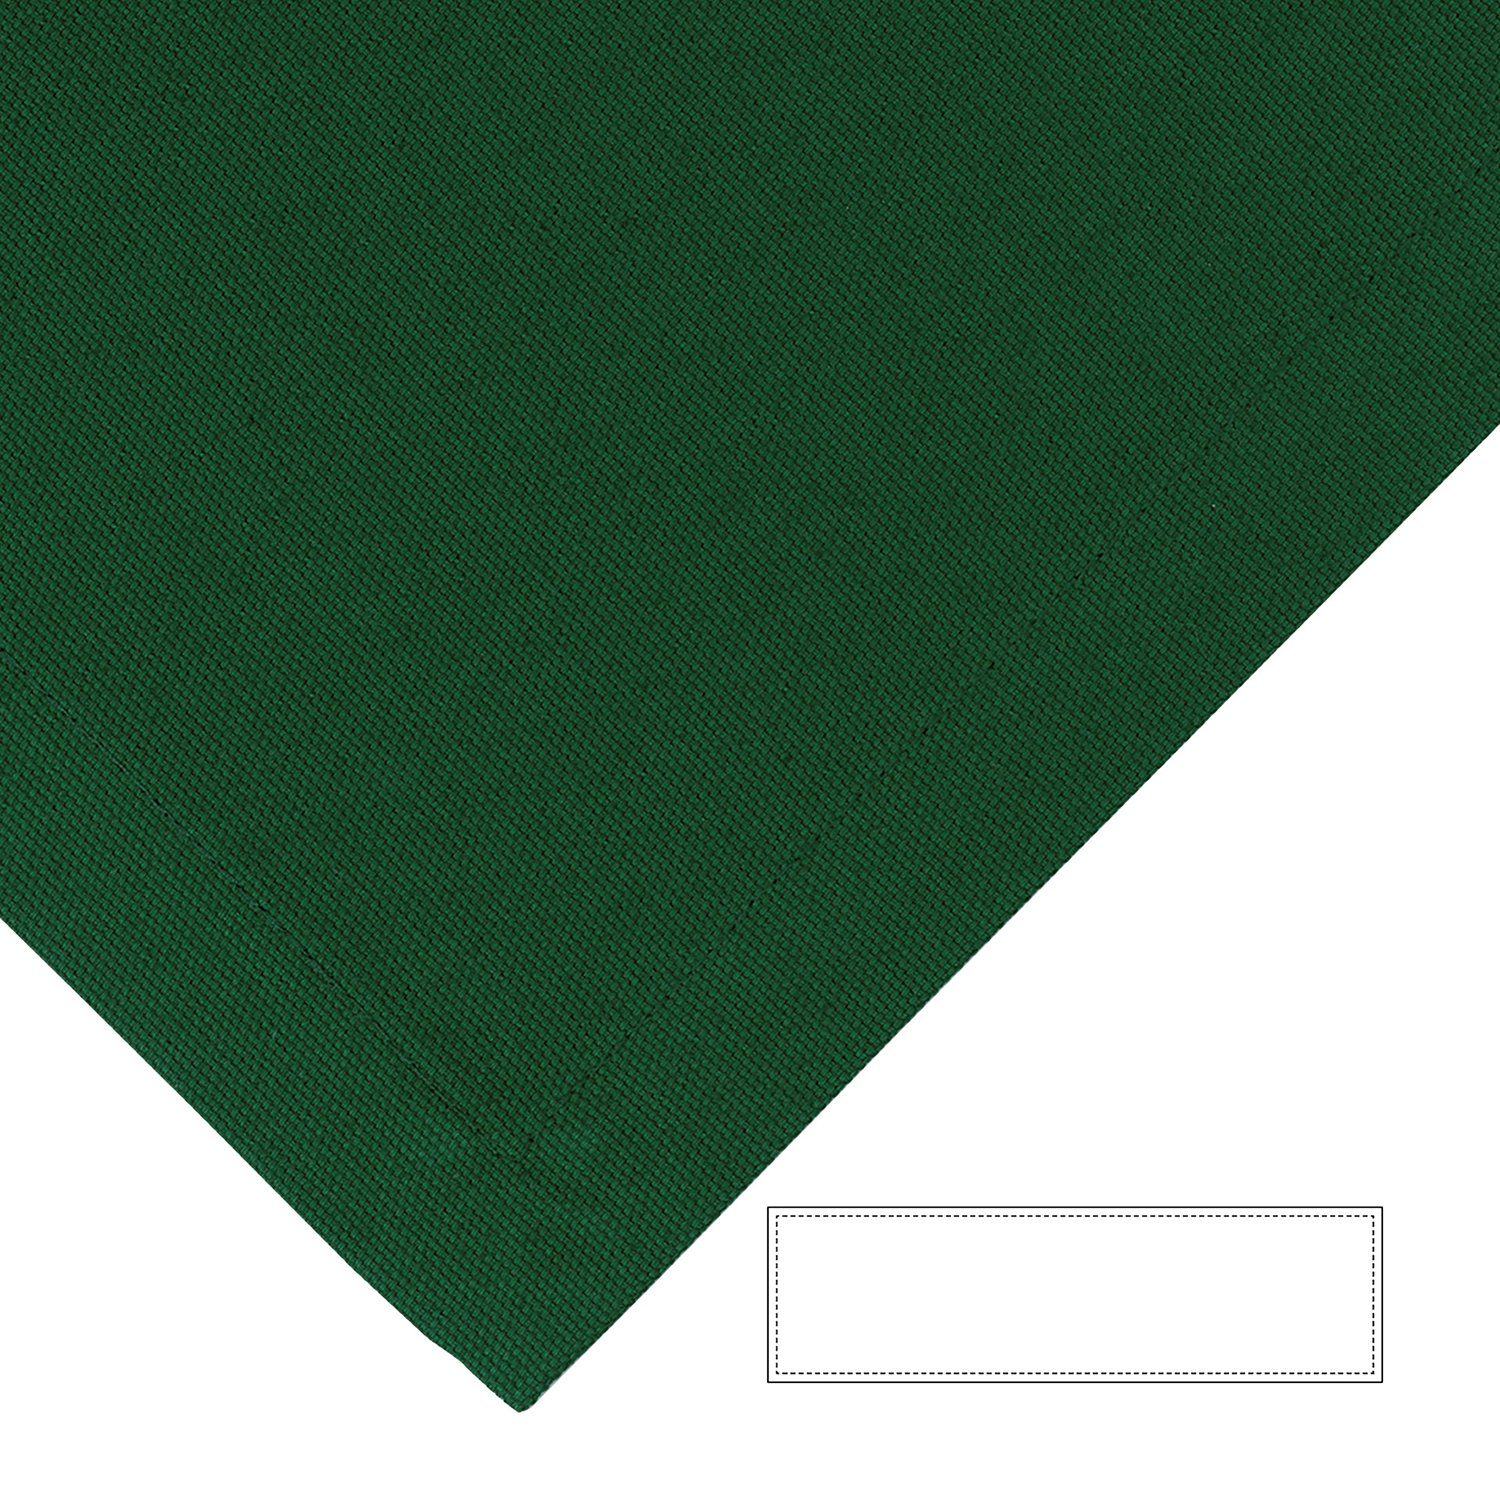 Fink Tischläufer Tischläufer Bente - dunkelgrün - 100% Baumwolle - B.40cm x T.140cm, bis 40° waschbar